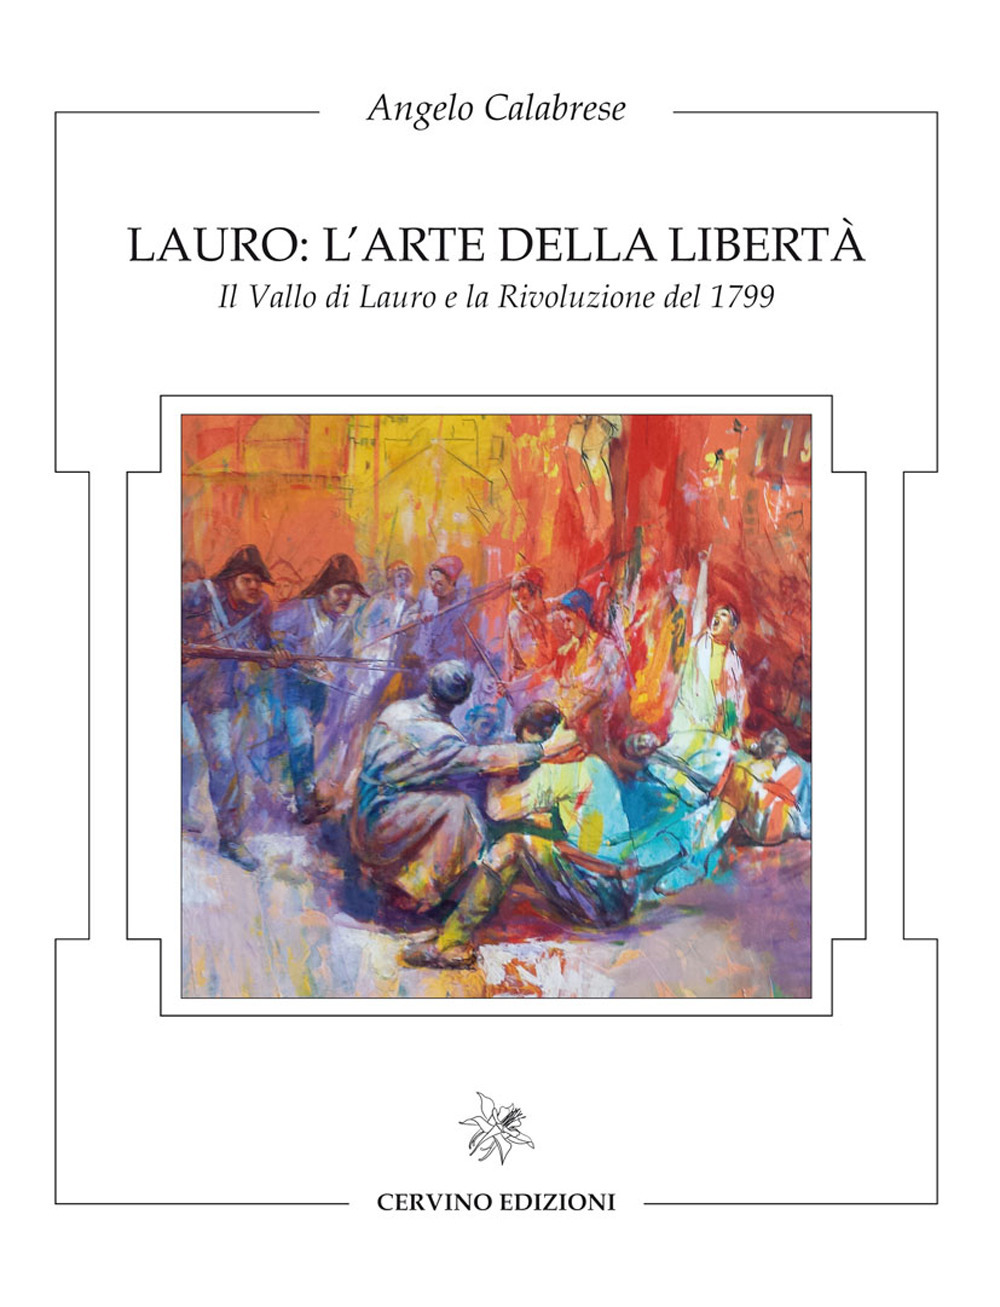 Lauro: l'arte della libertà. Il Vallo di Lauro e la rivoluzione del 1799. Catalogo della mostra. Ediz. illustrata